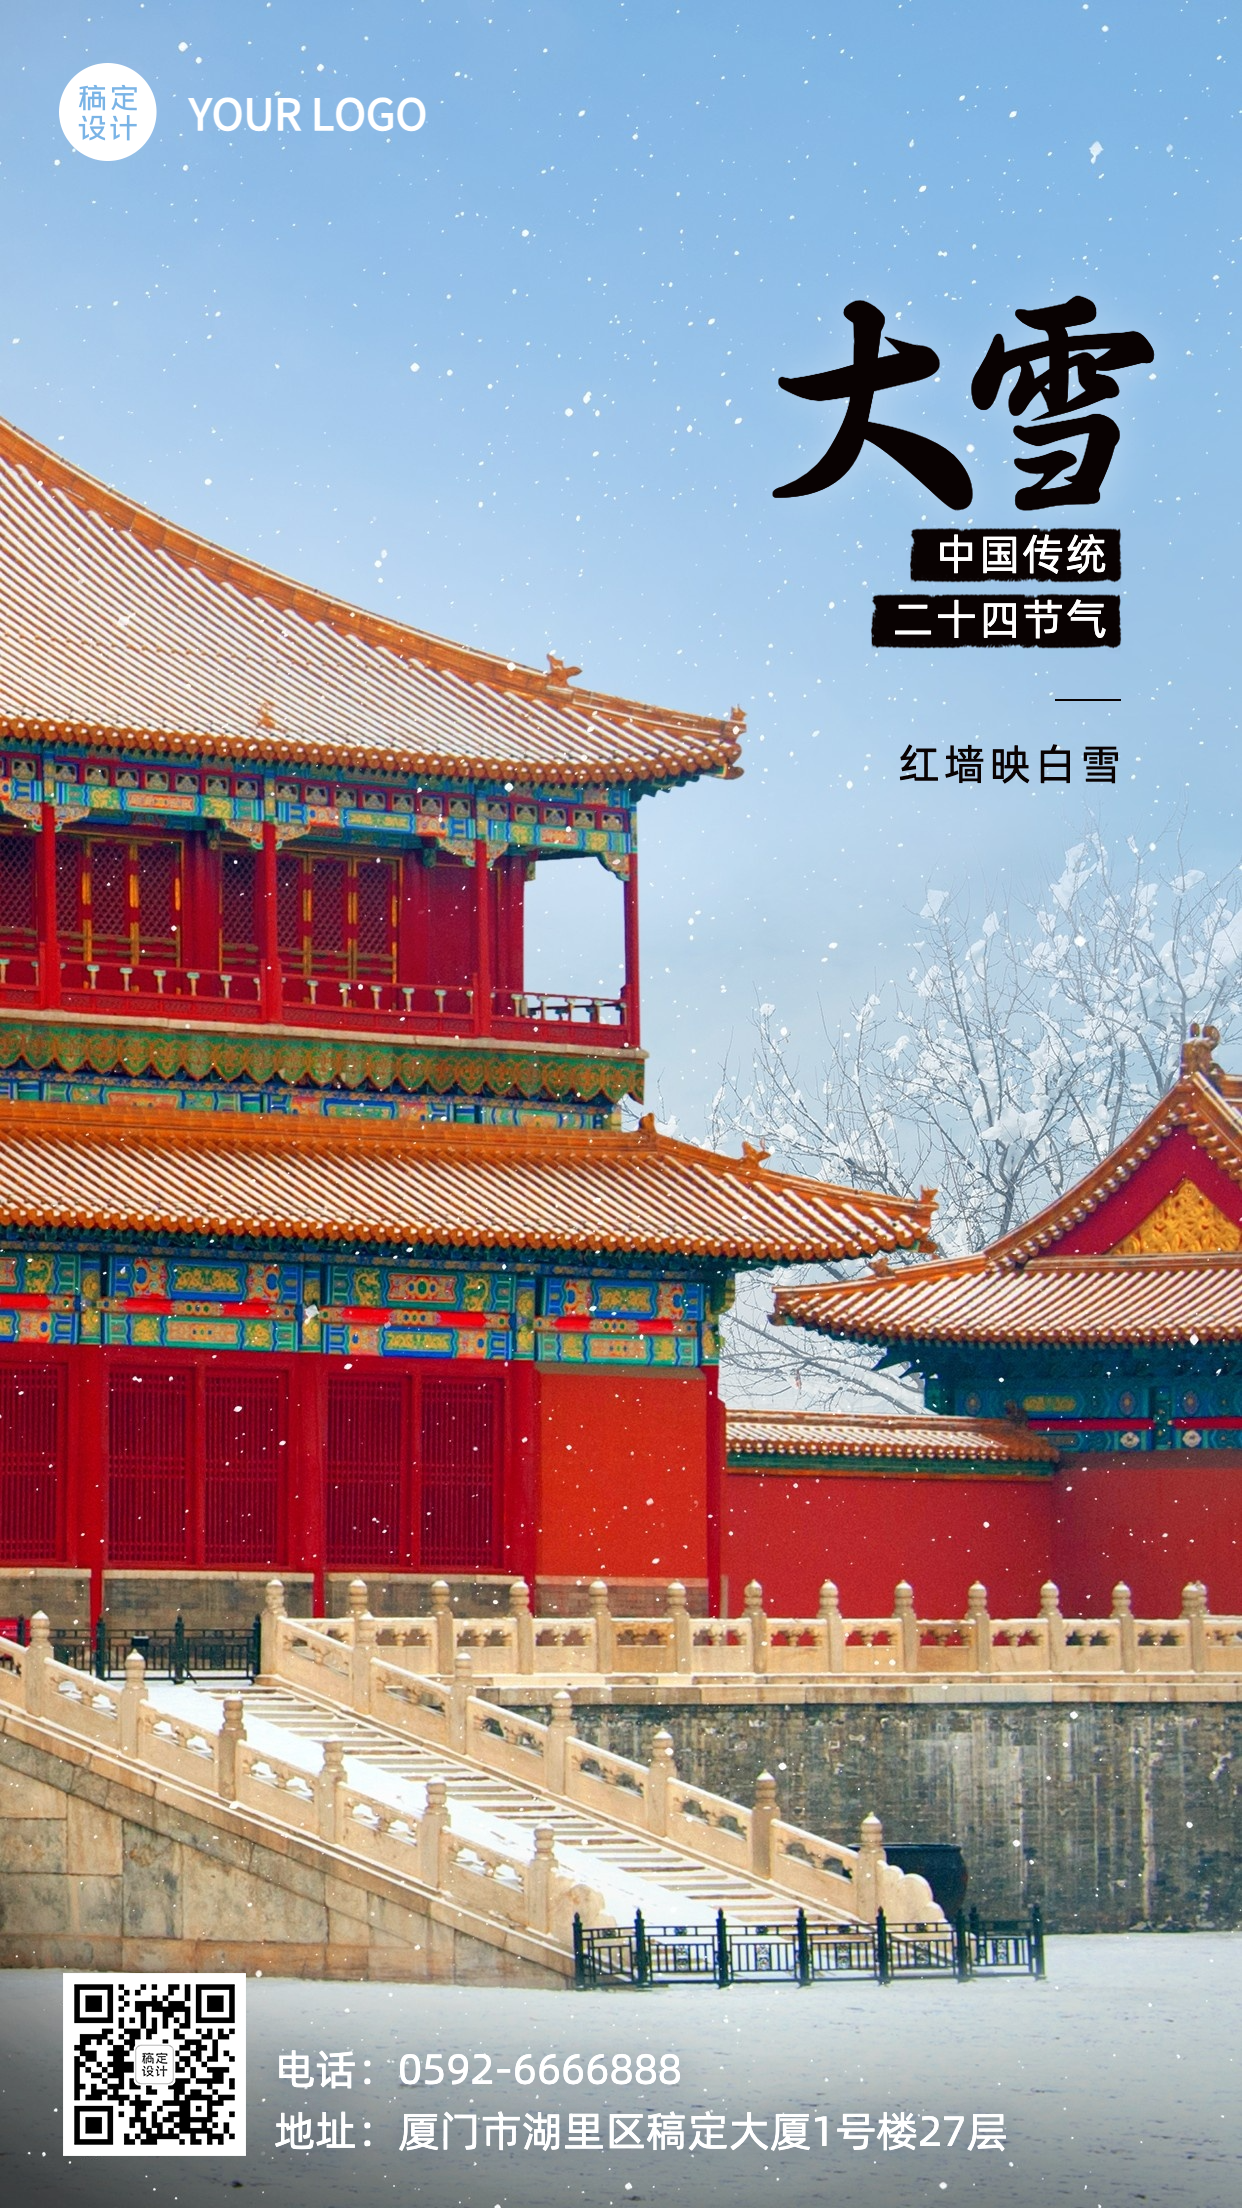 大雪旅行祝福古建筑风景中国风海报预览效果